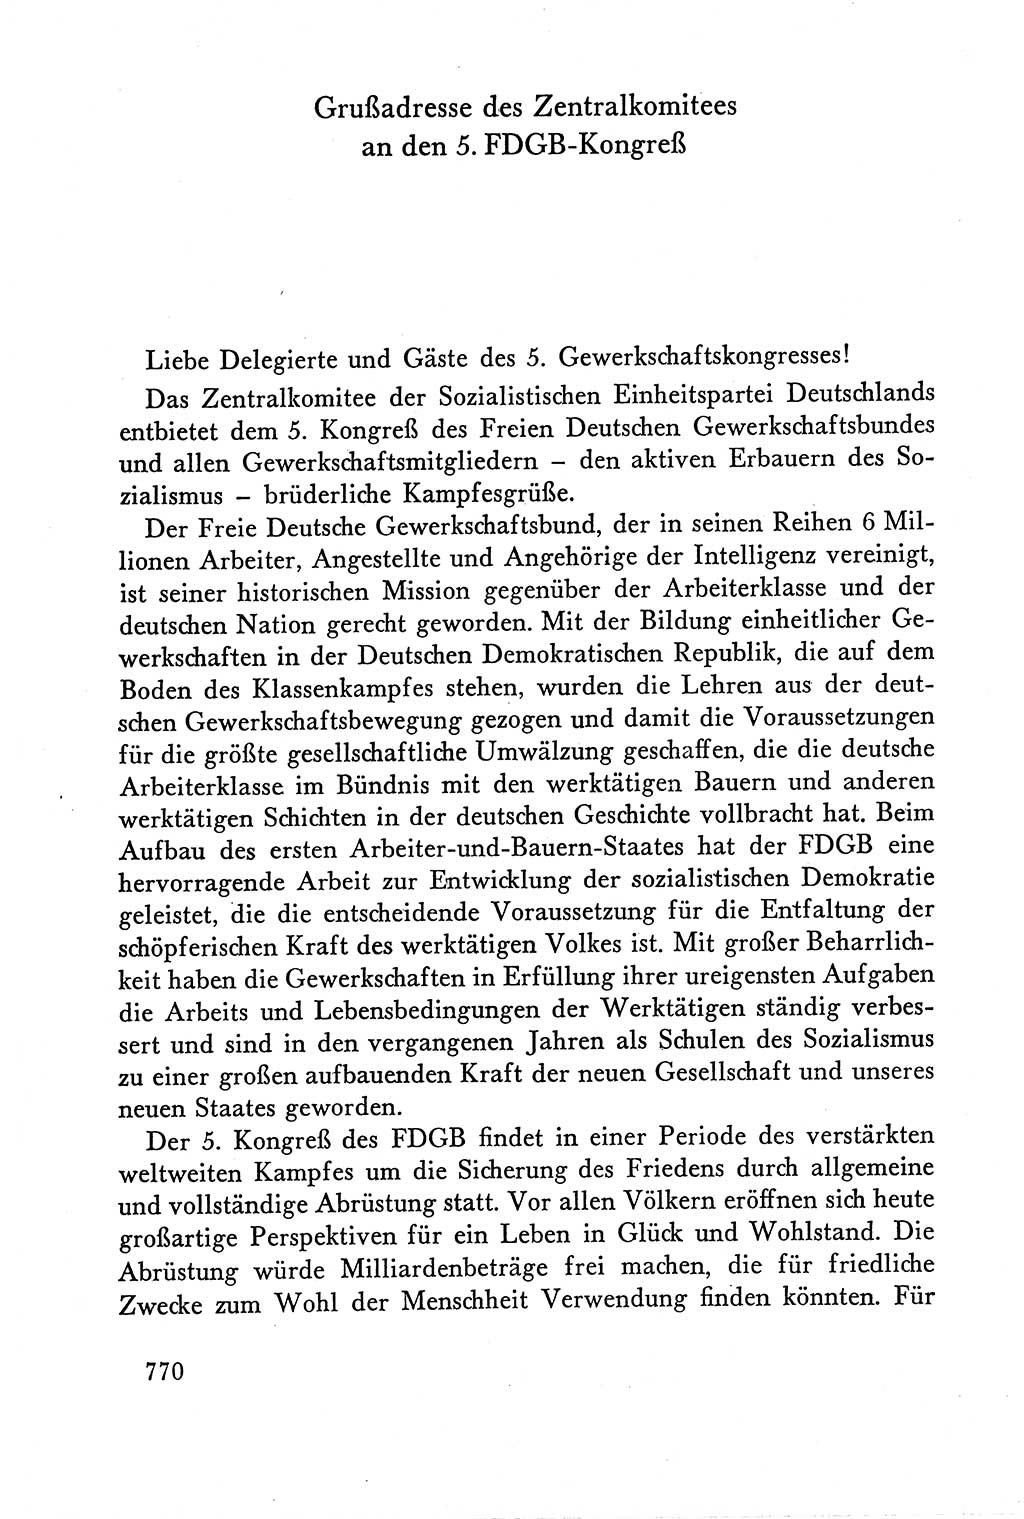 Dokumente der Sozialistischen Einheitspartei Deutschlands (SED) [Deutsche Demokratische Republik (DDR)] 1958-1959, Seite 770 (Dok. SED DDR 1958-1959, S. 770)